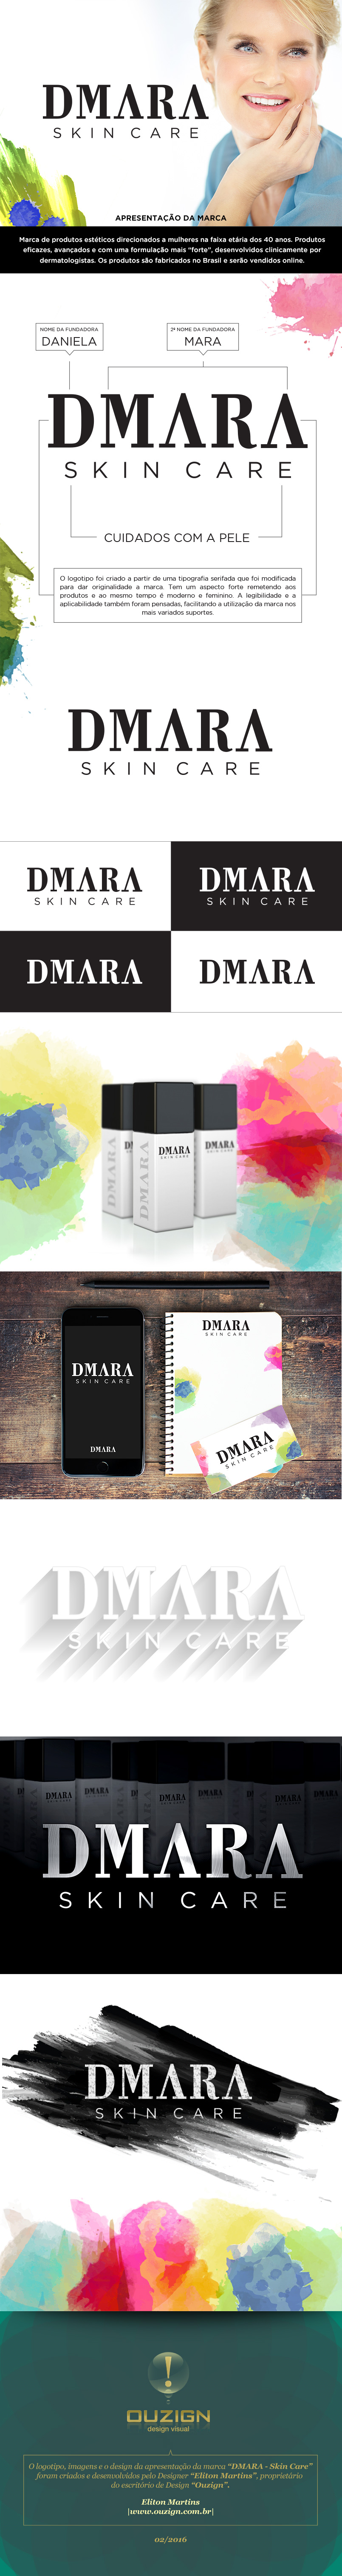 Apresentação da marca DMARA - Skin Care